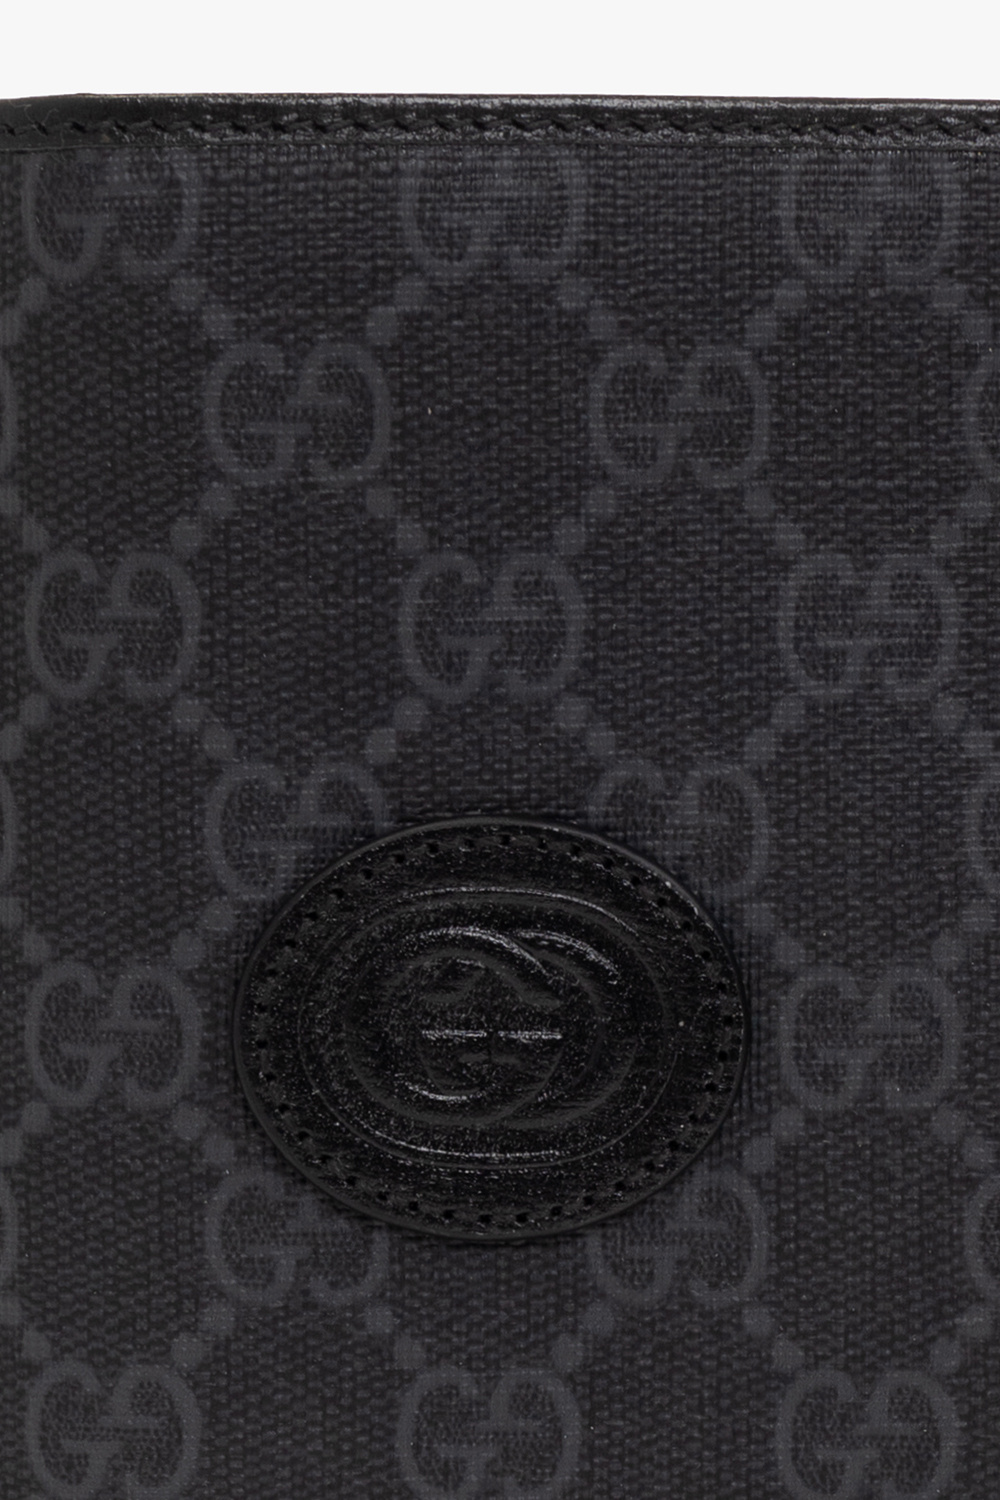 Gucci Logo Passport Cover